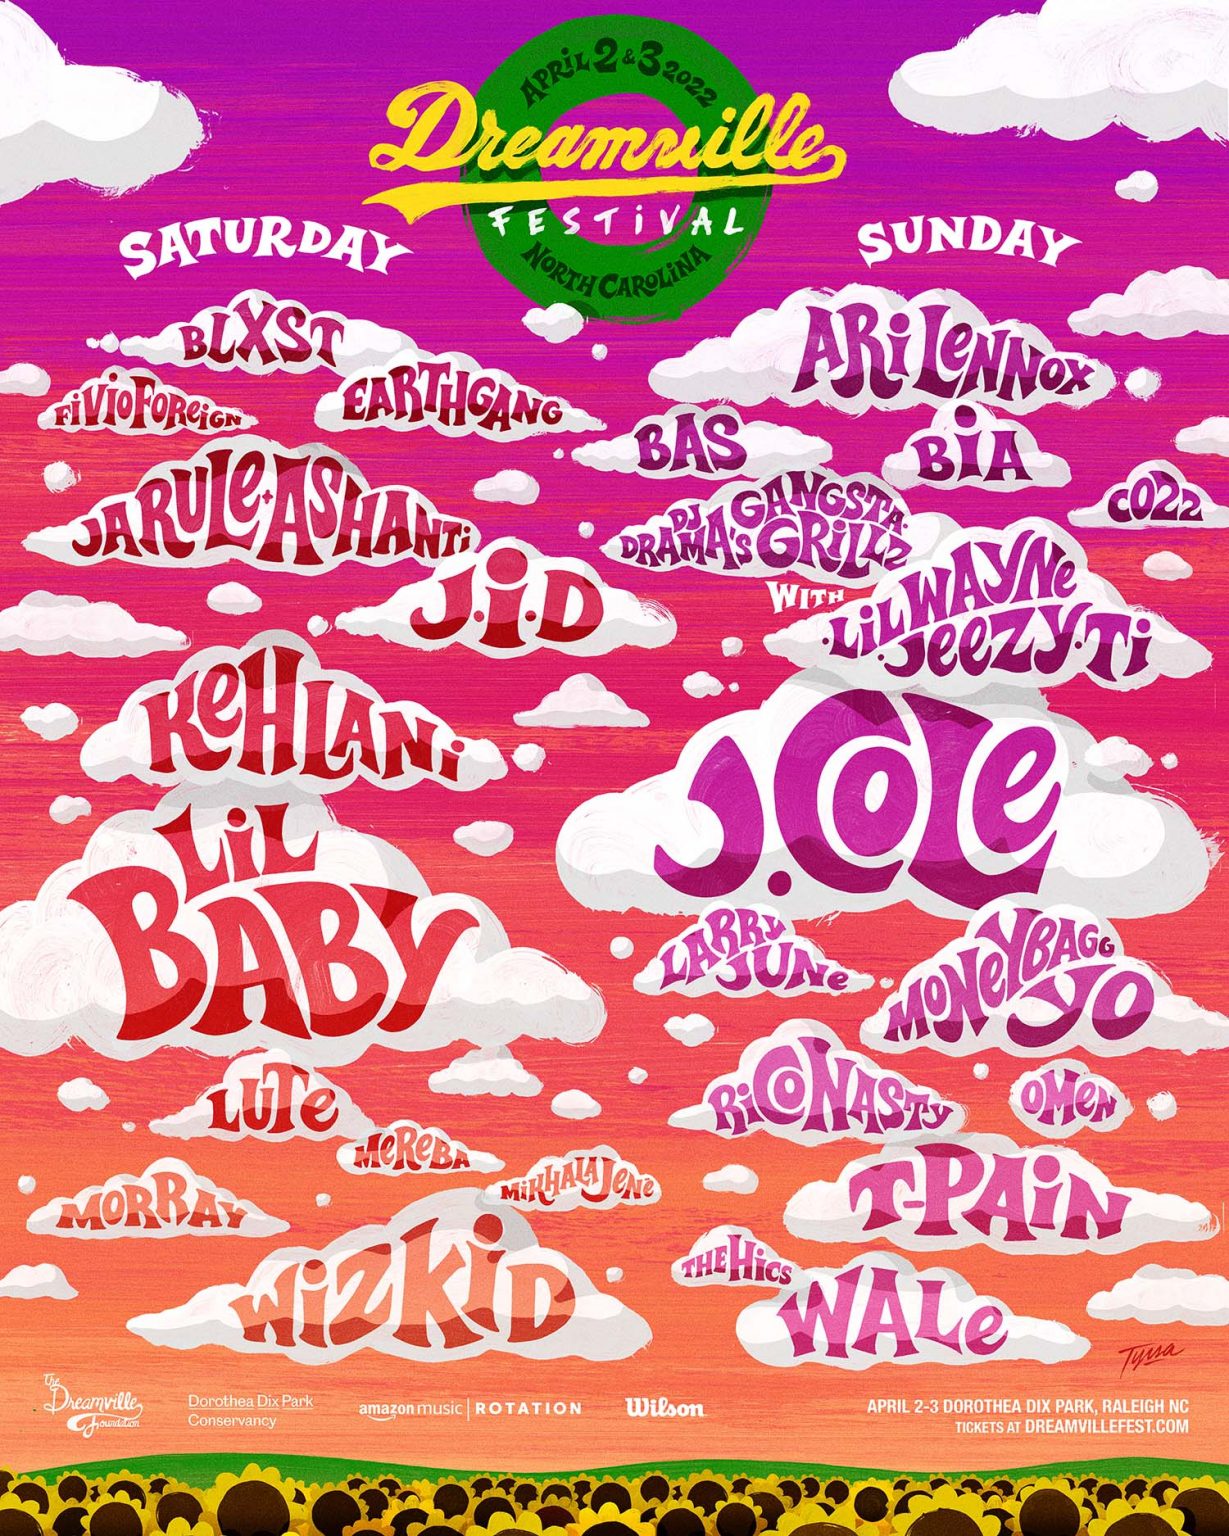 Dreamville Fest 2022 Lineup Announced J. Cole, Wizkid, Lil Wayne, Wale